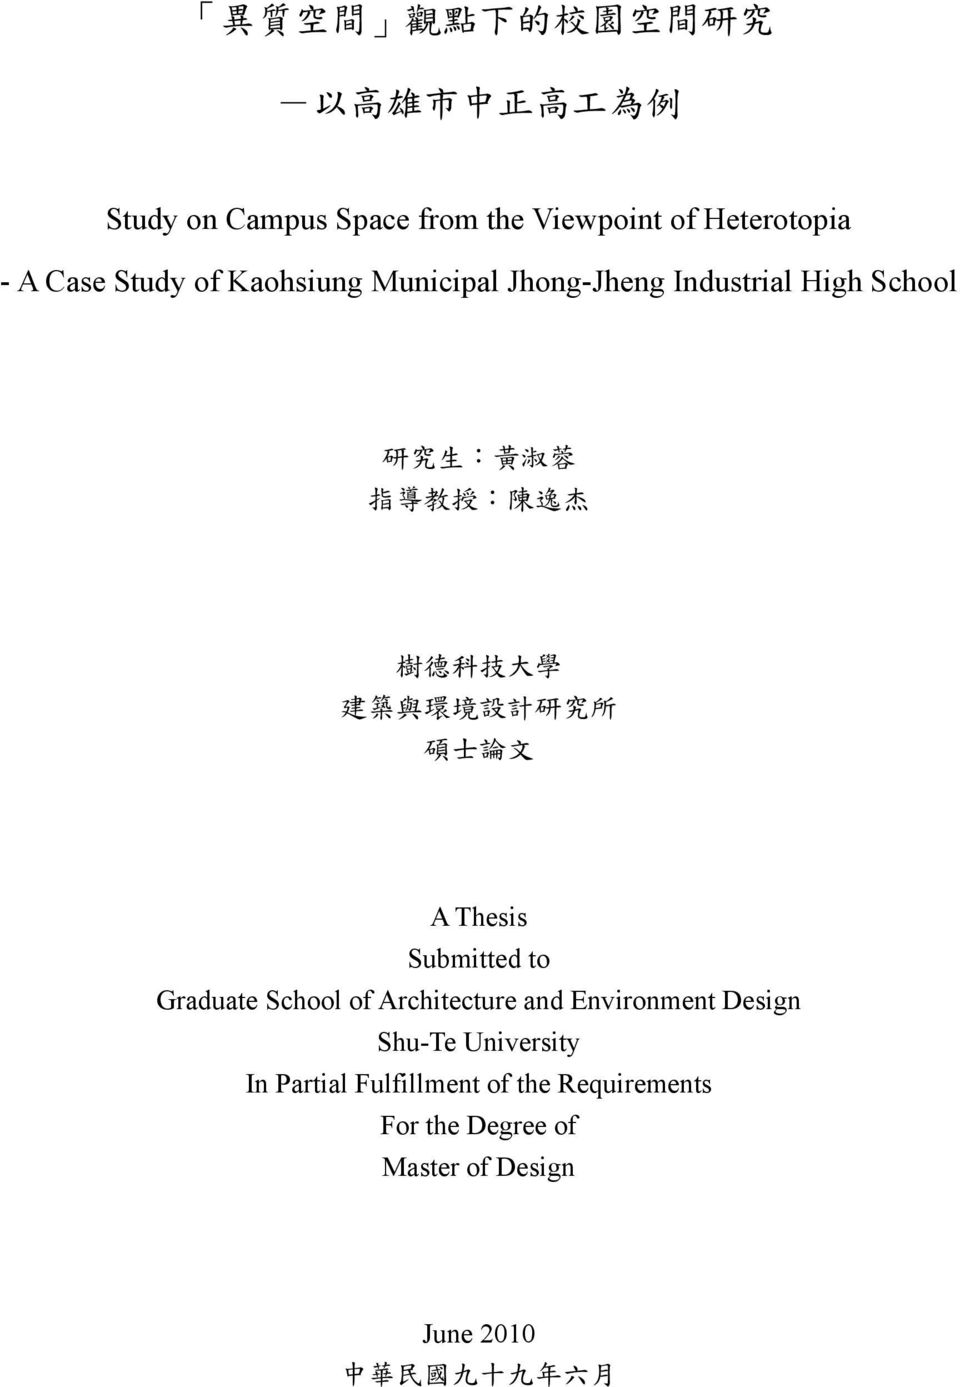 築 與 環 境 設 計 研 究 所 碩 士 論 文 A Thesis Submitted to Graduate School of Architecture and Environment Design Shu-Te